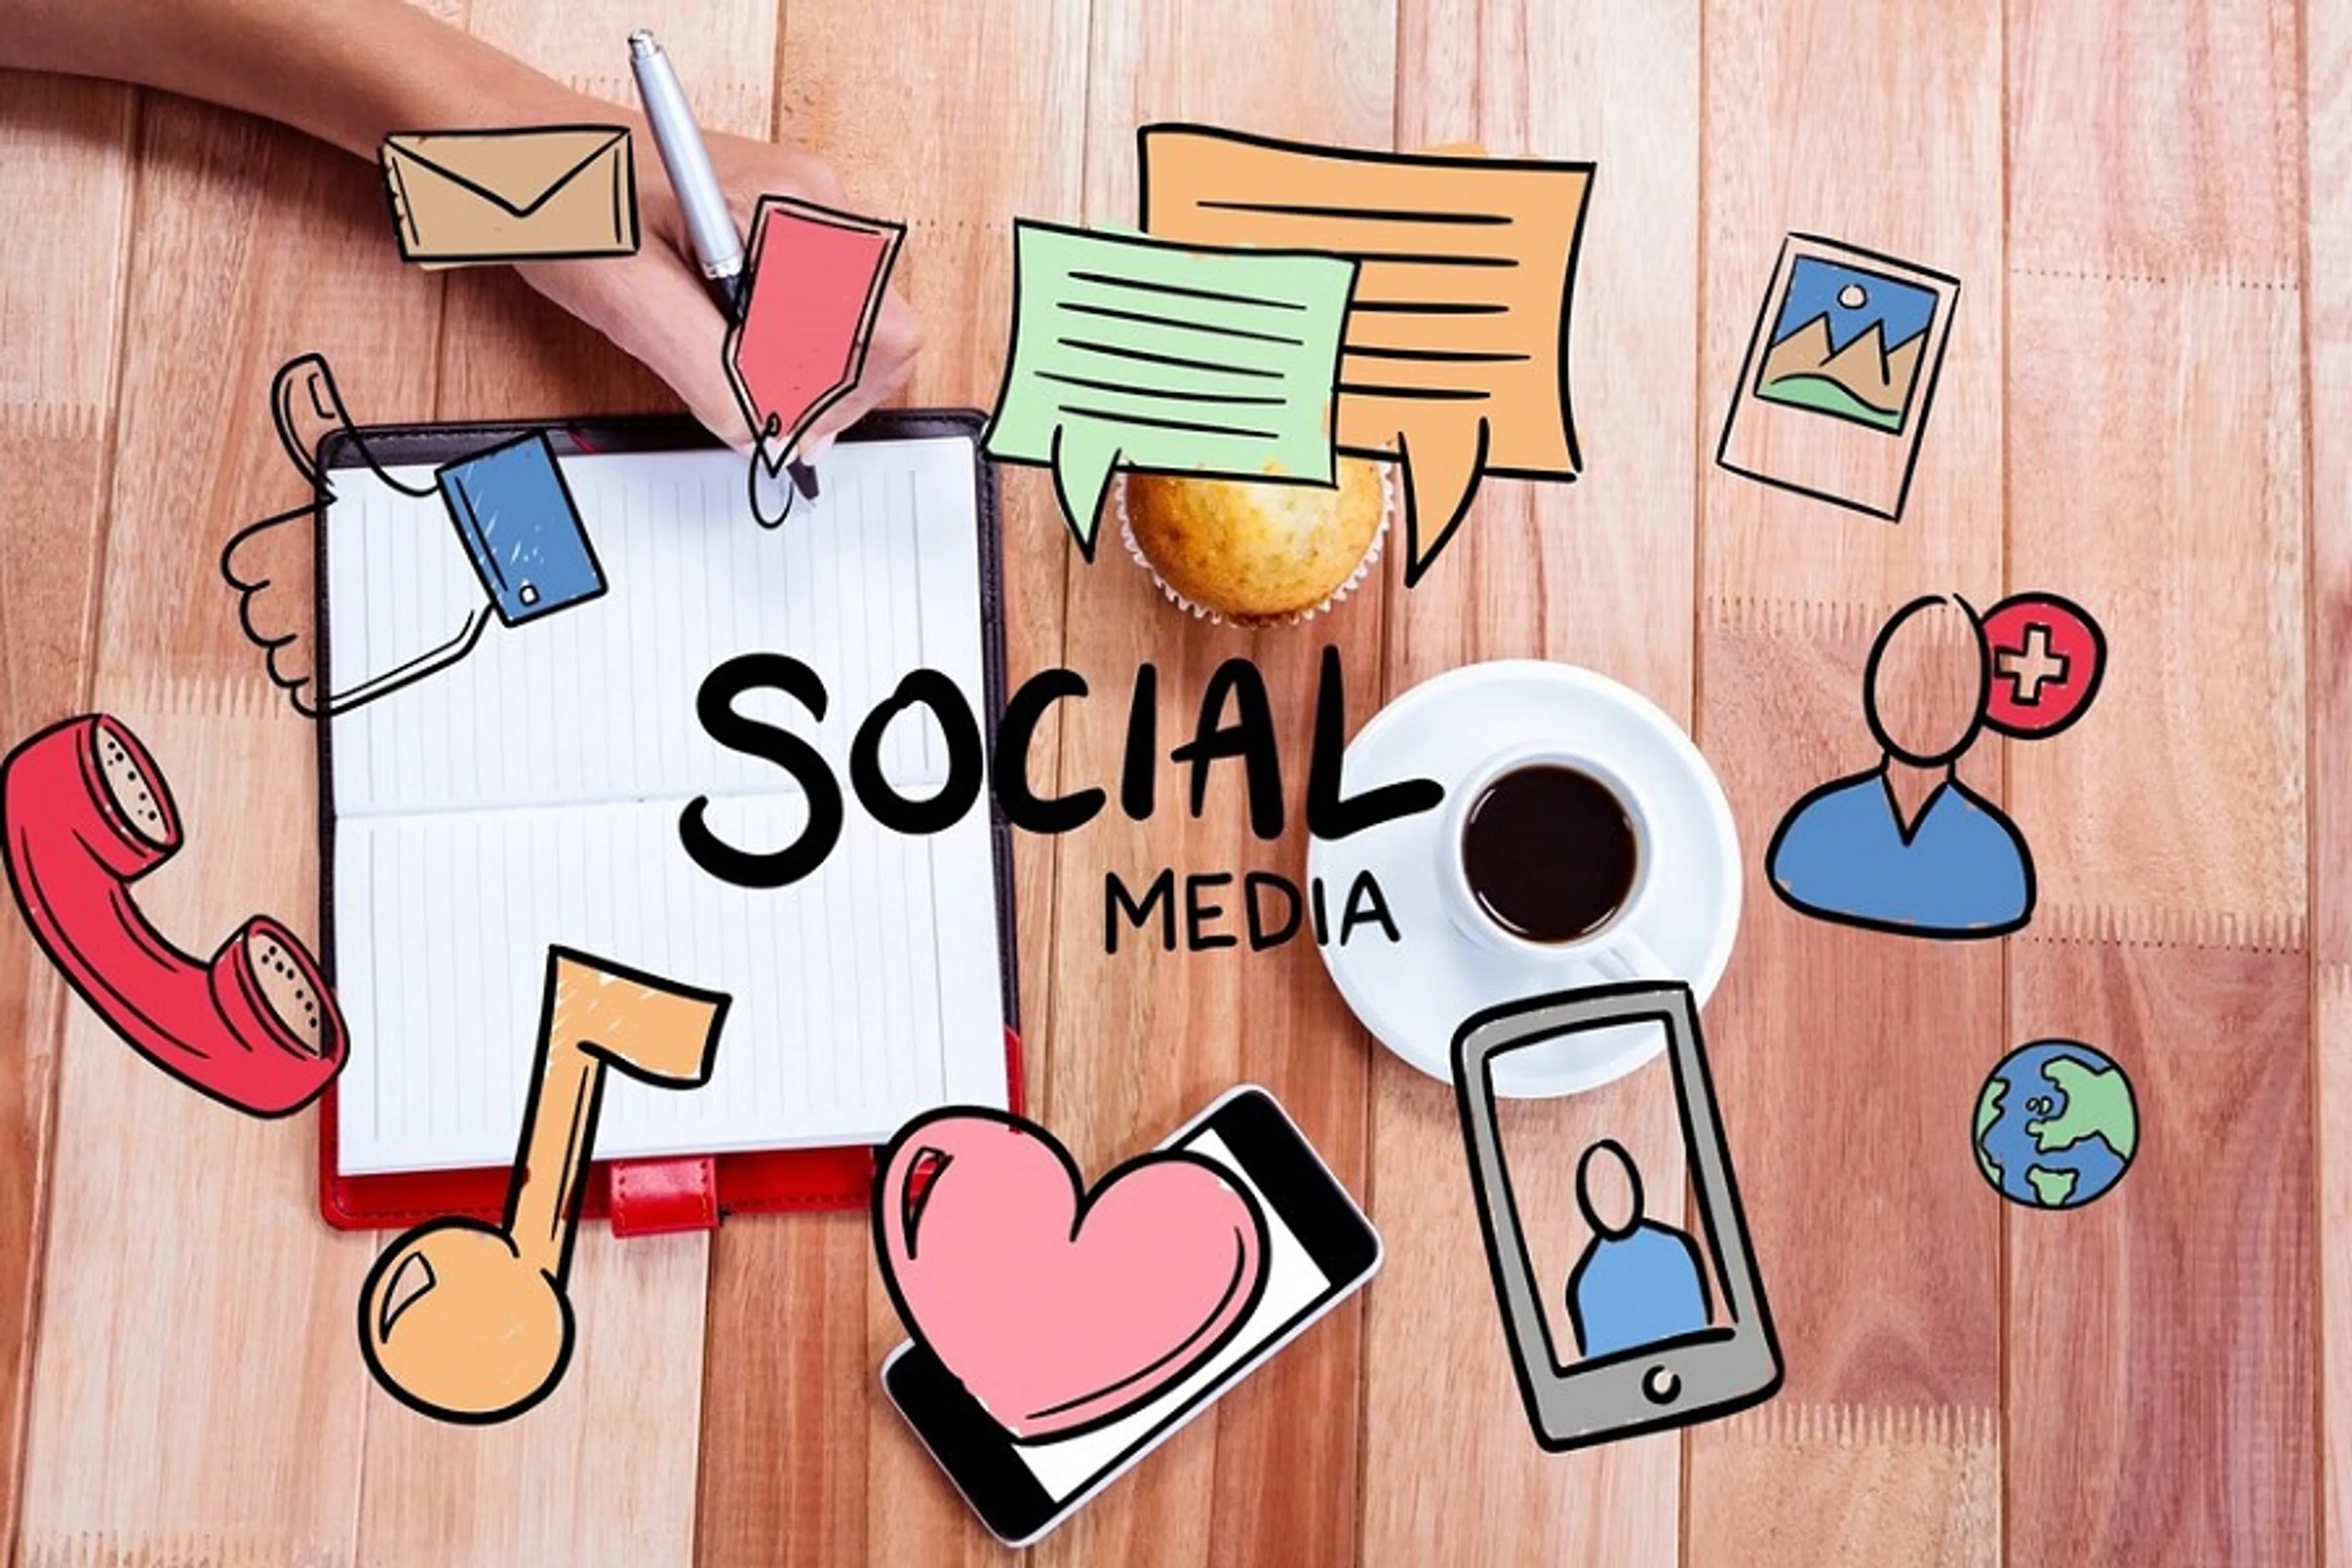 Social Media Marketing là gì và tại sao nó quan trọng?